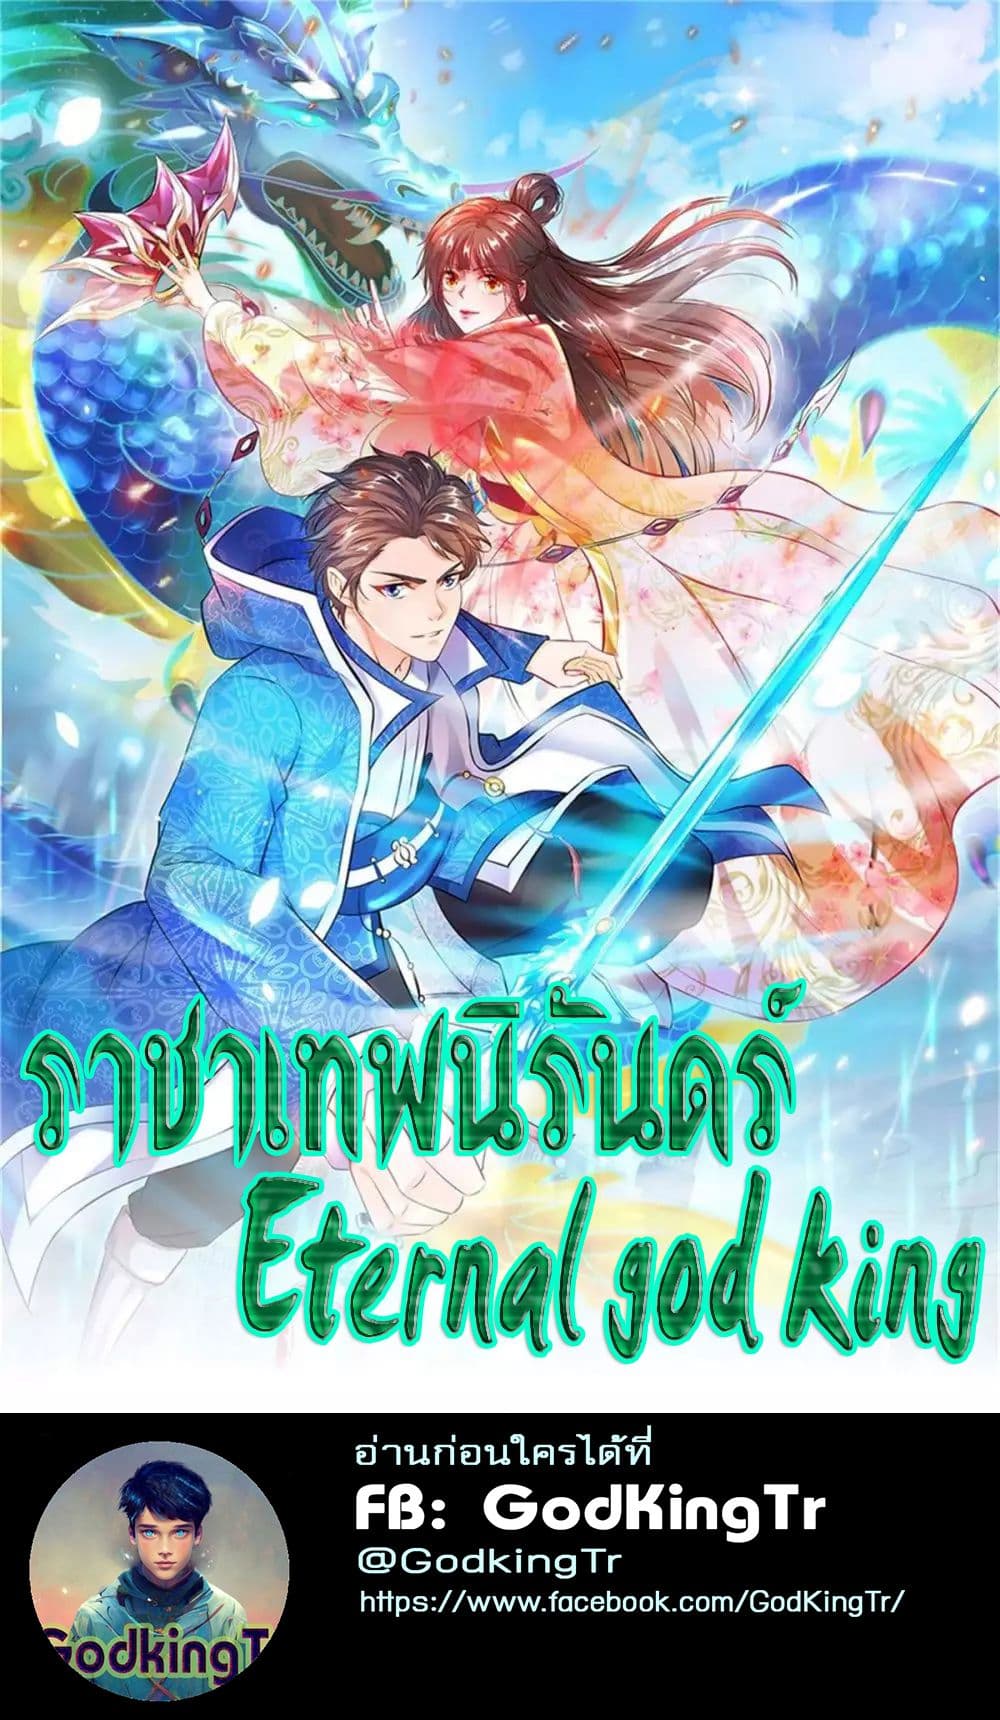 Eternal god King 37 01